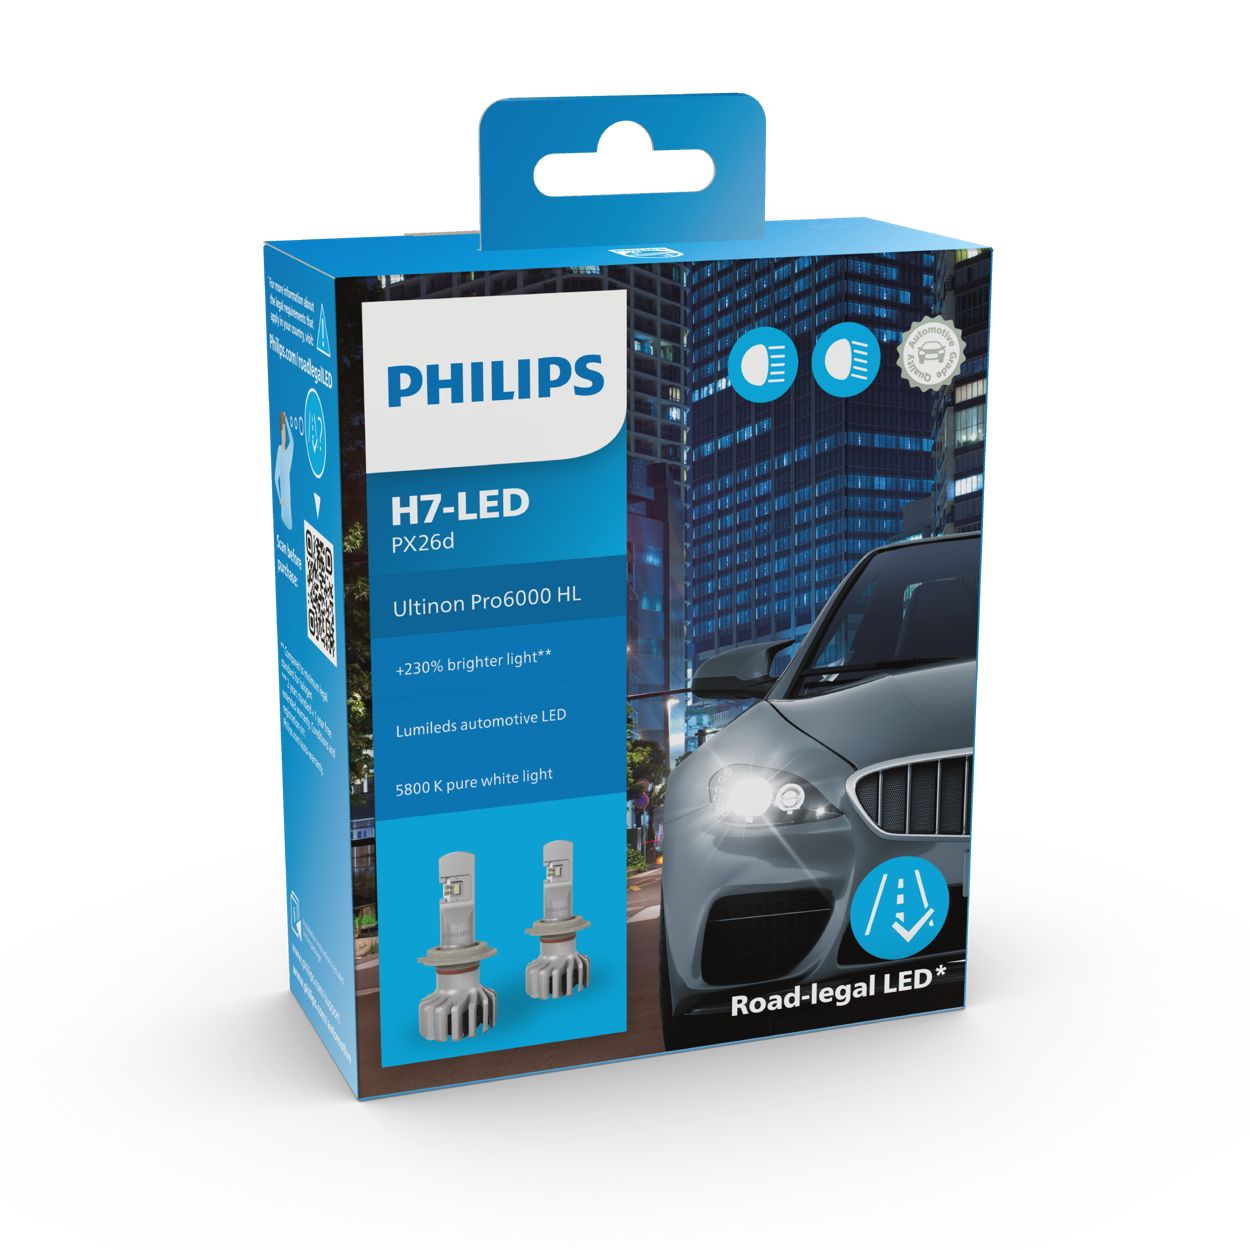 PHILIPS Halogenlampen / Glühlampen / LEDs - 11972U6000X2, 11179X2